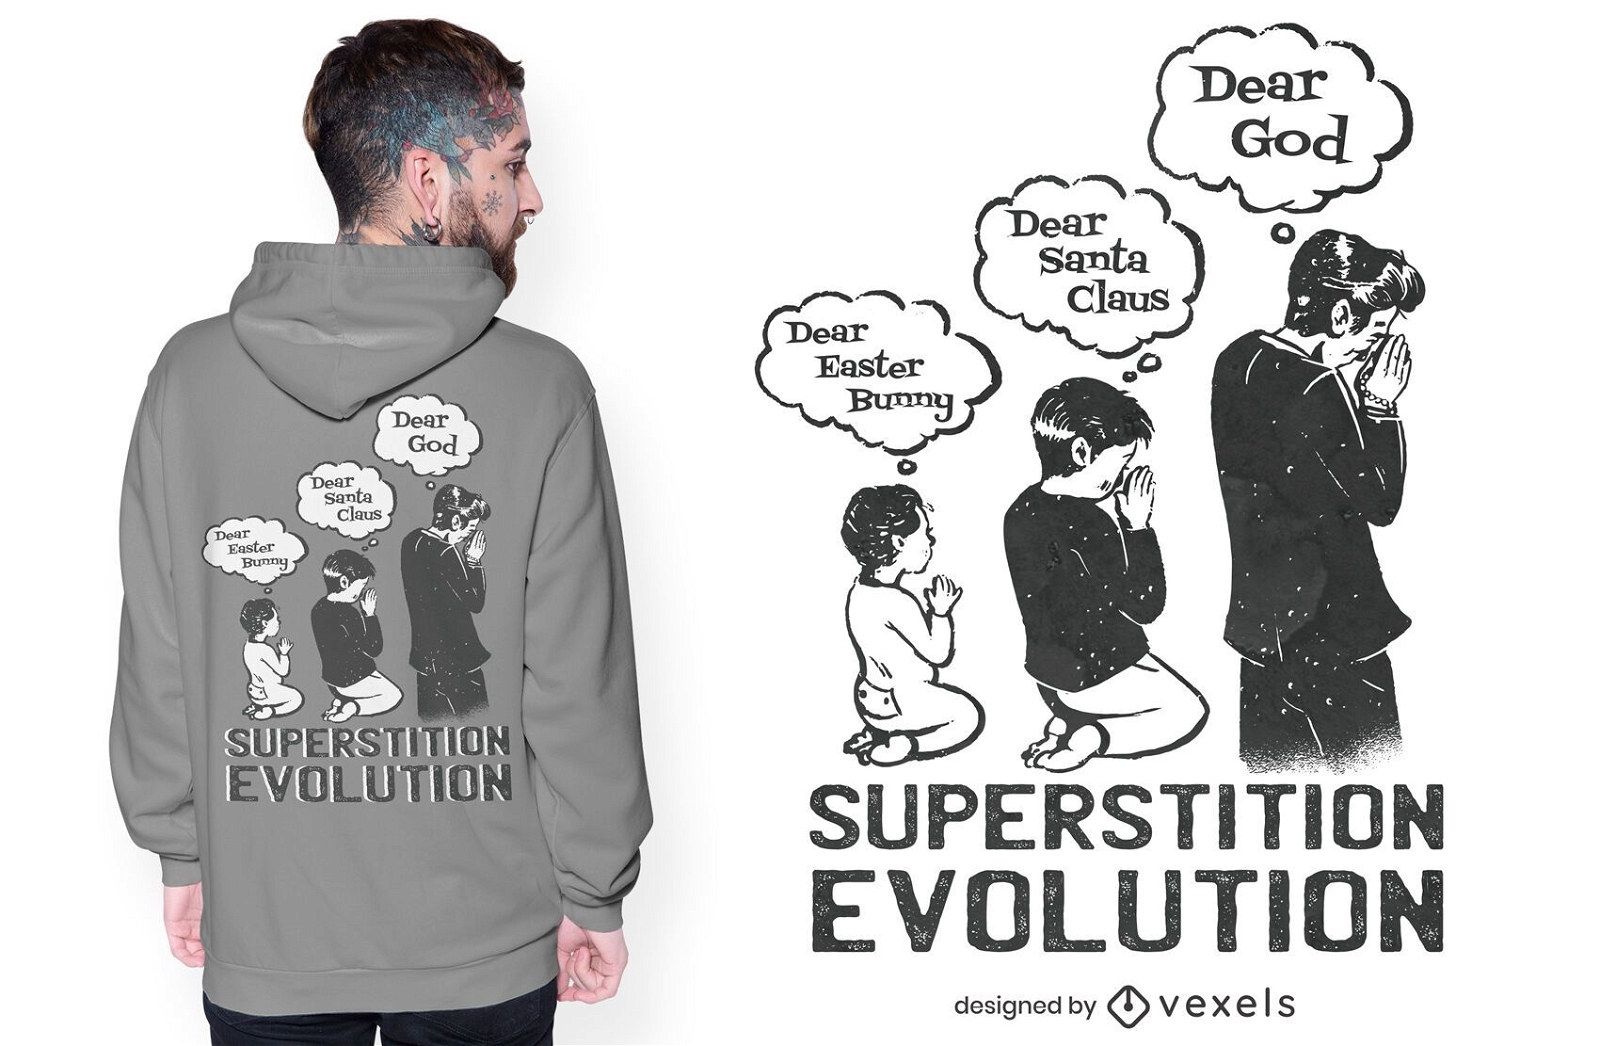 Dise?o de camiseta de evoluci?n de superstici?n.